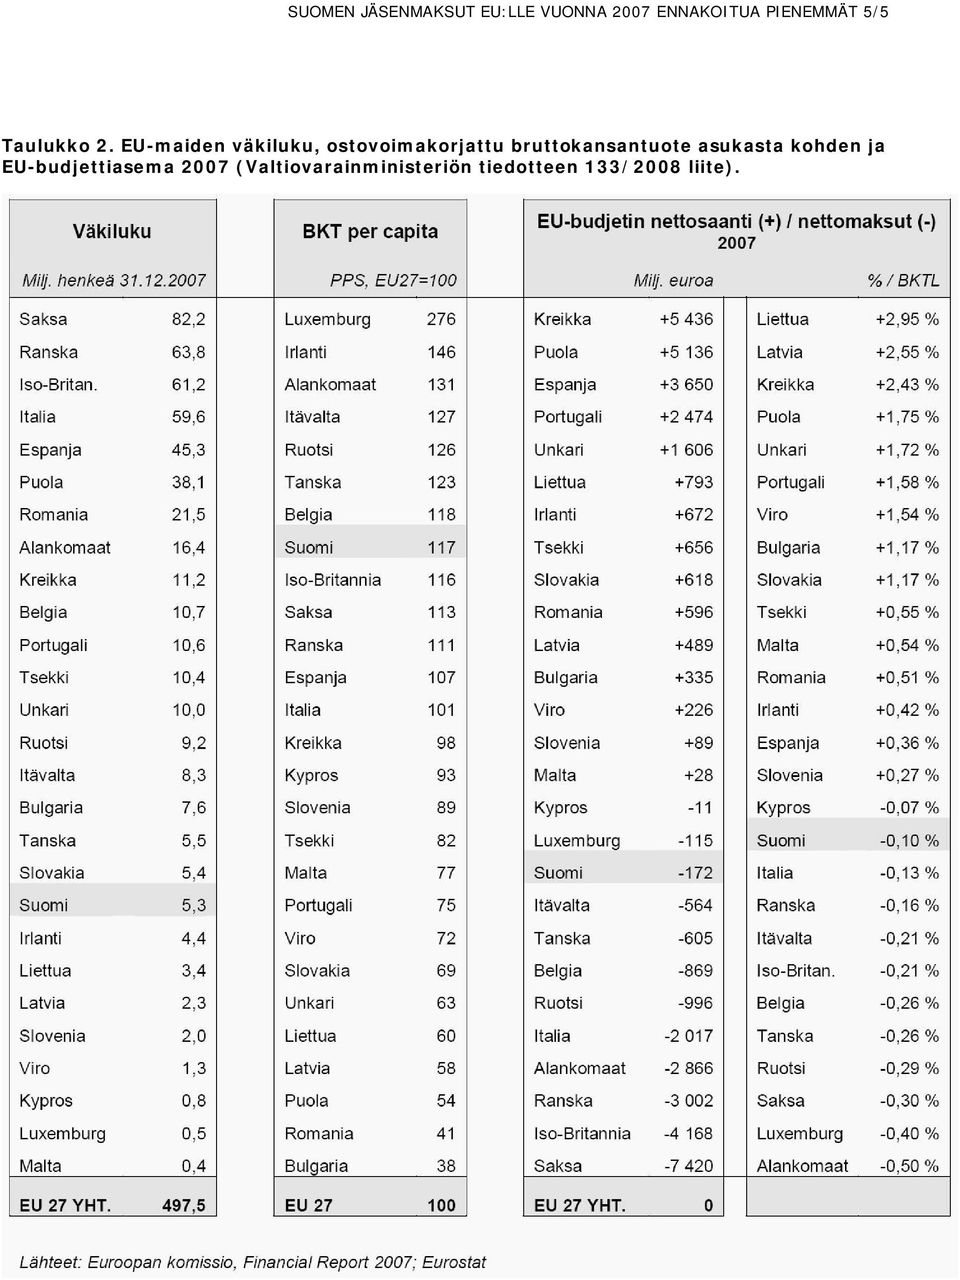 EU-maiden väkiluku, ostovoimakorjattu bruttokansantuote